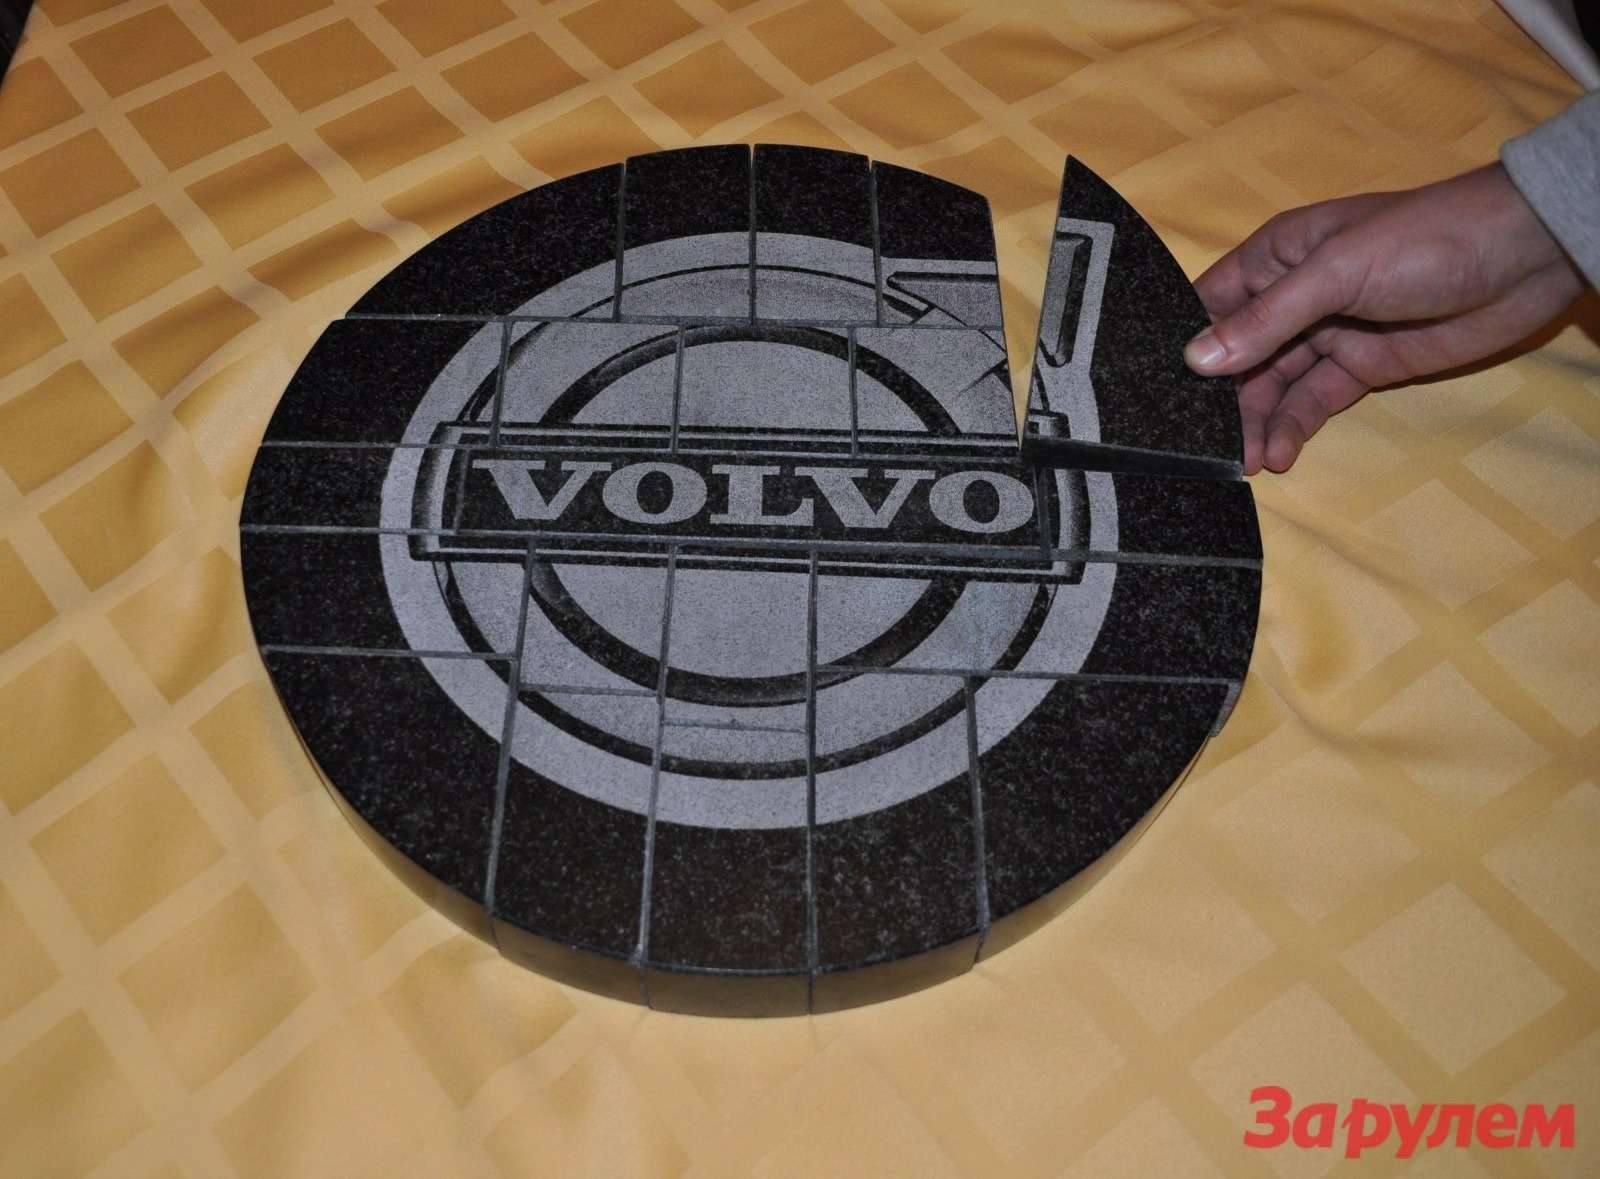 Volvo — 2014:за волшебством www.zr.ruо